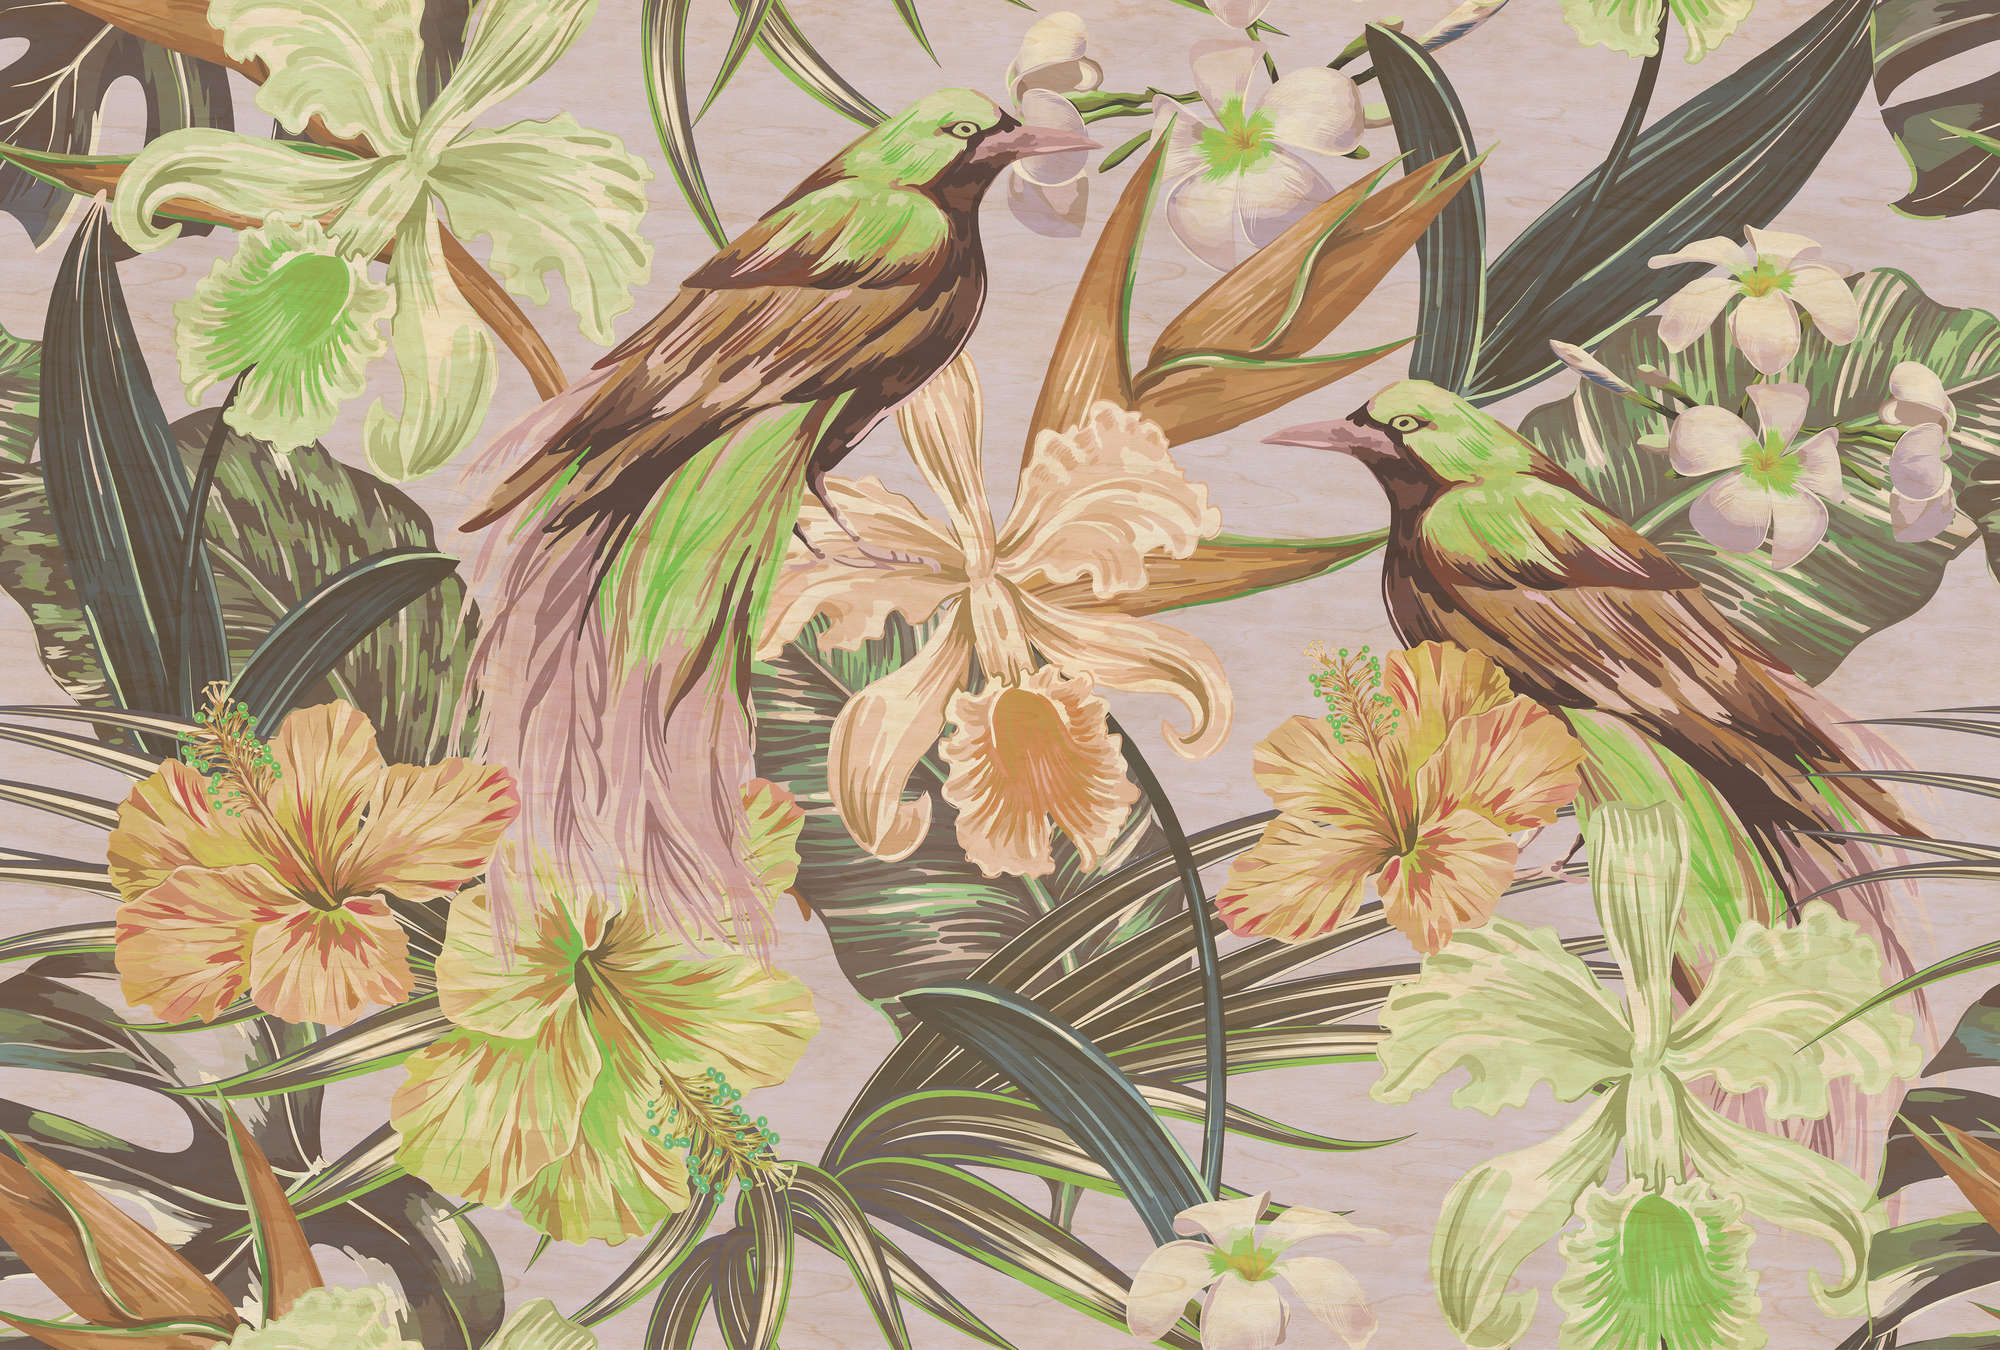             Pájaros exóticos 2 - Fotomural pájaros exóticos y plantas - textura rayada - Beige, Verde | textura no tejida
        